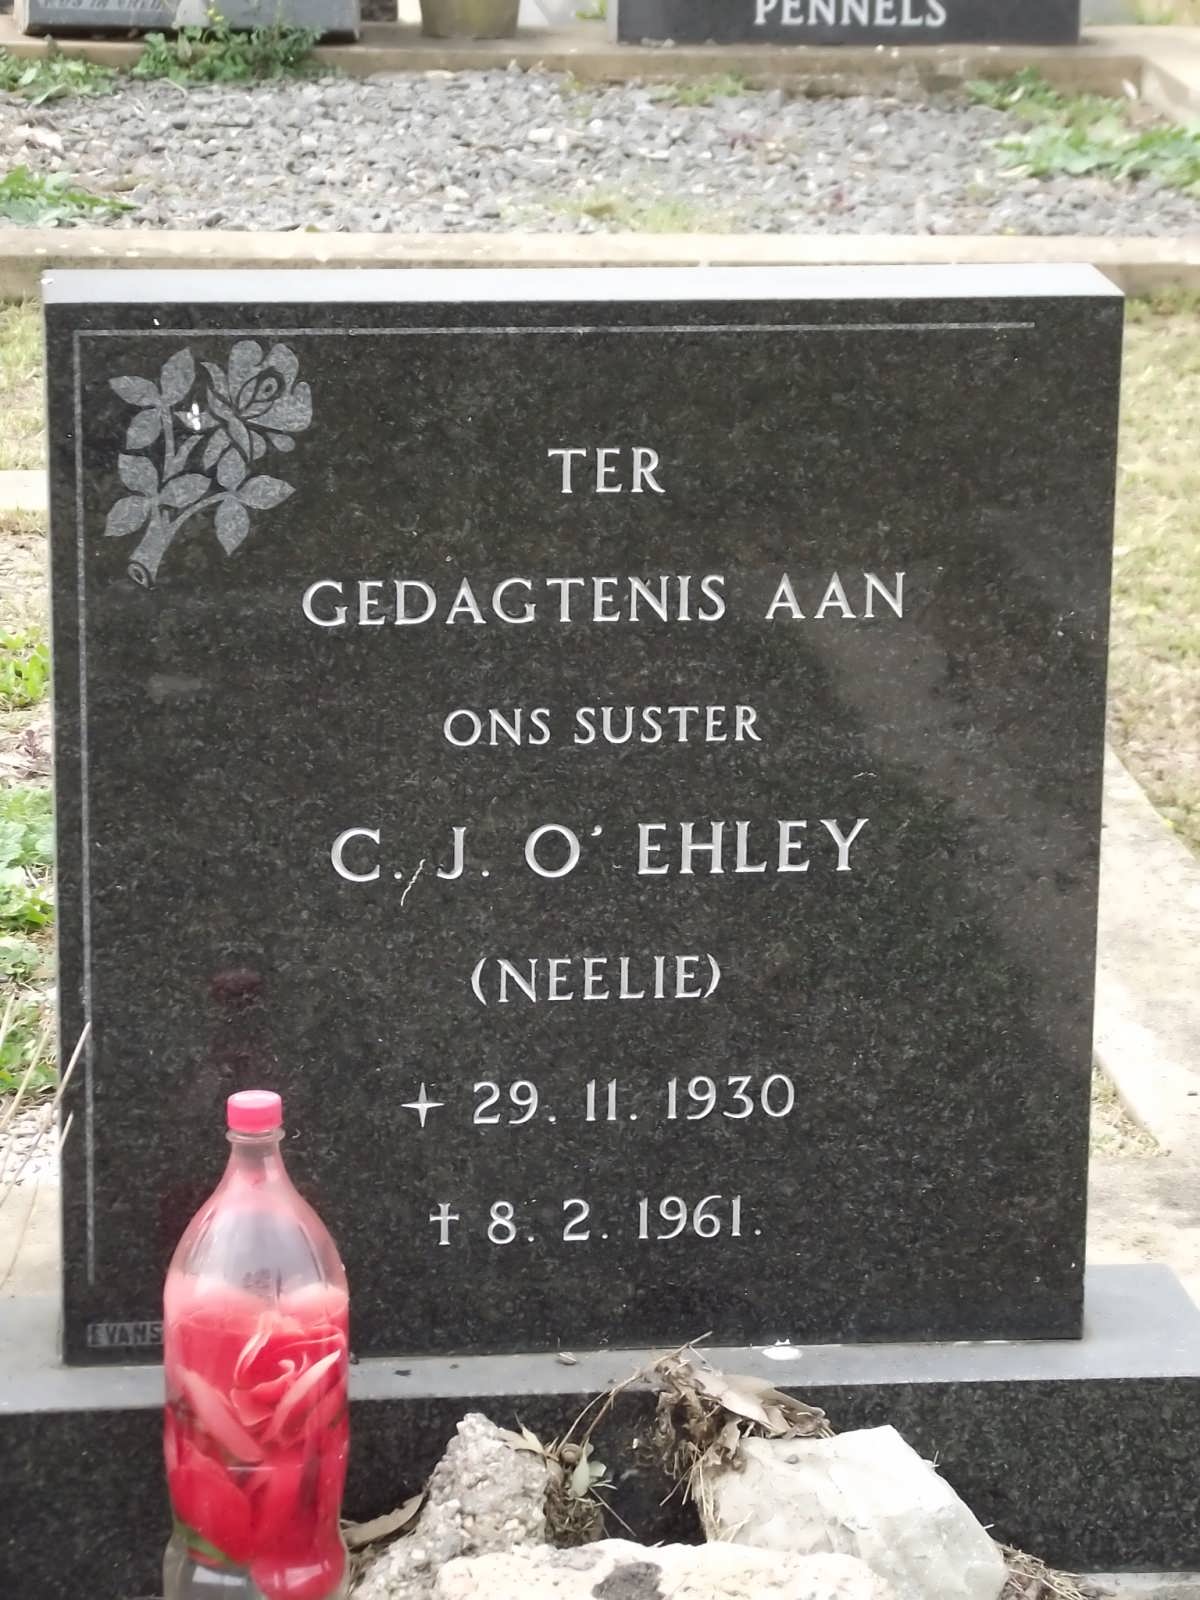 O'EHLEY C.J. 1930-1961